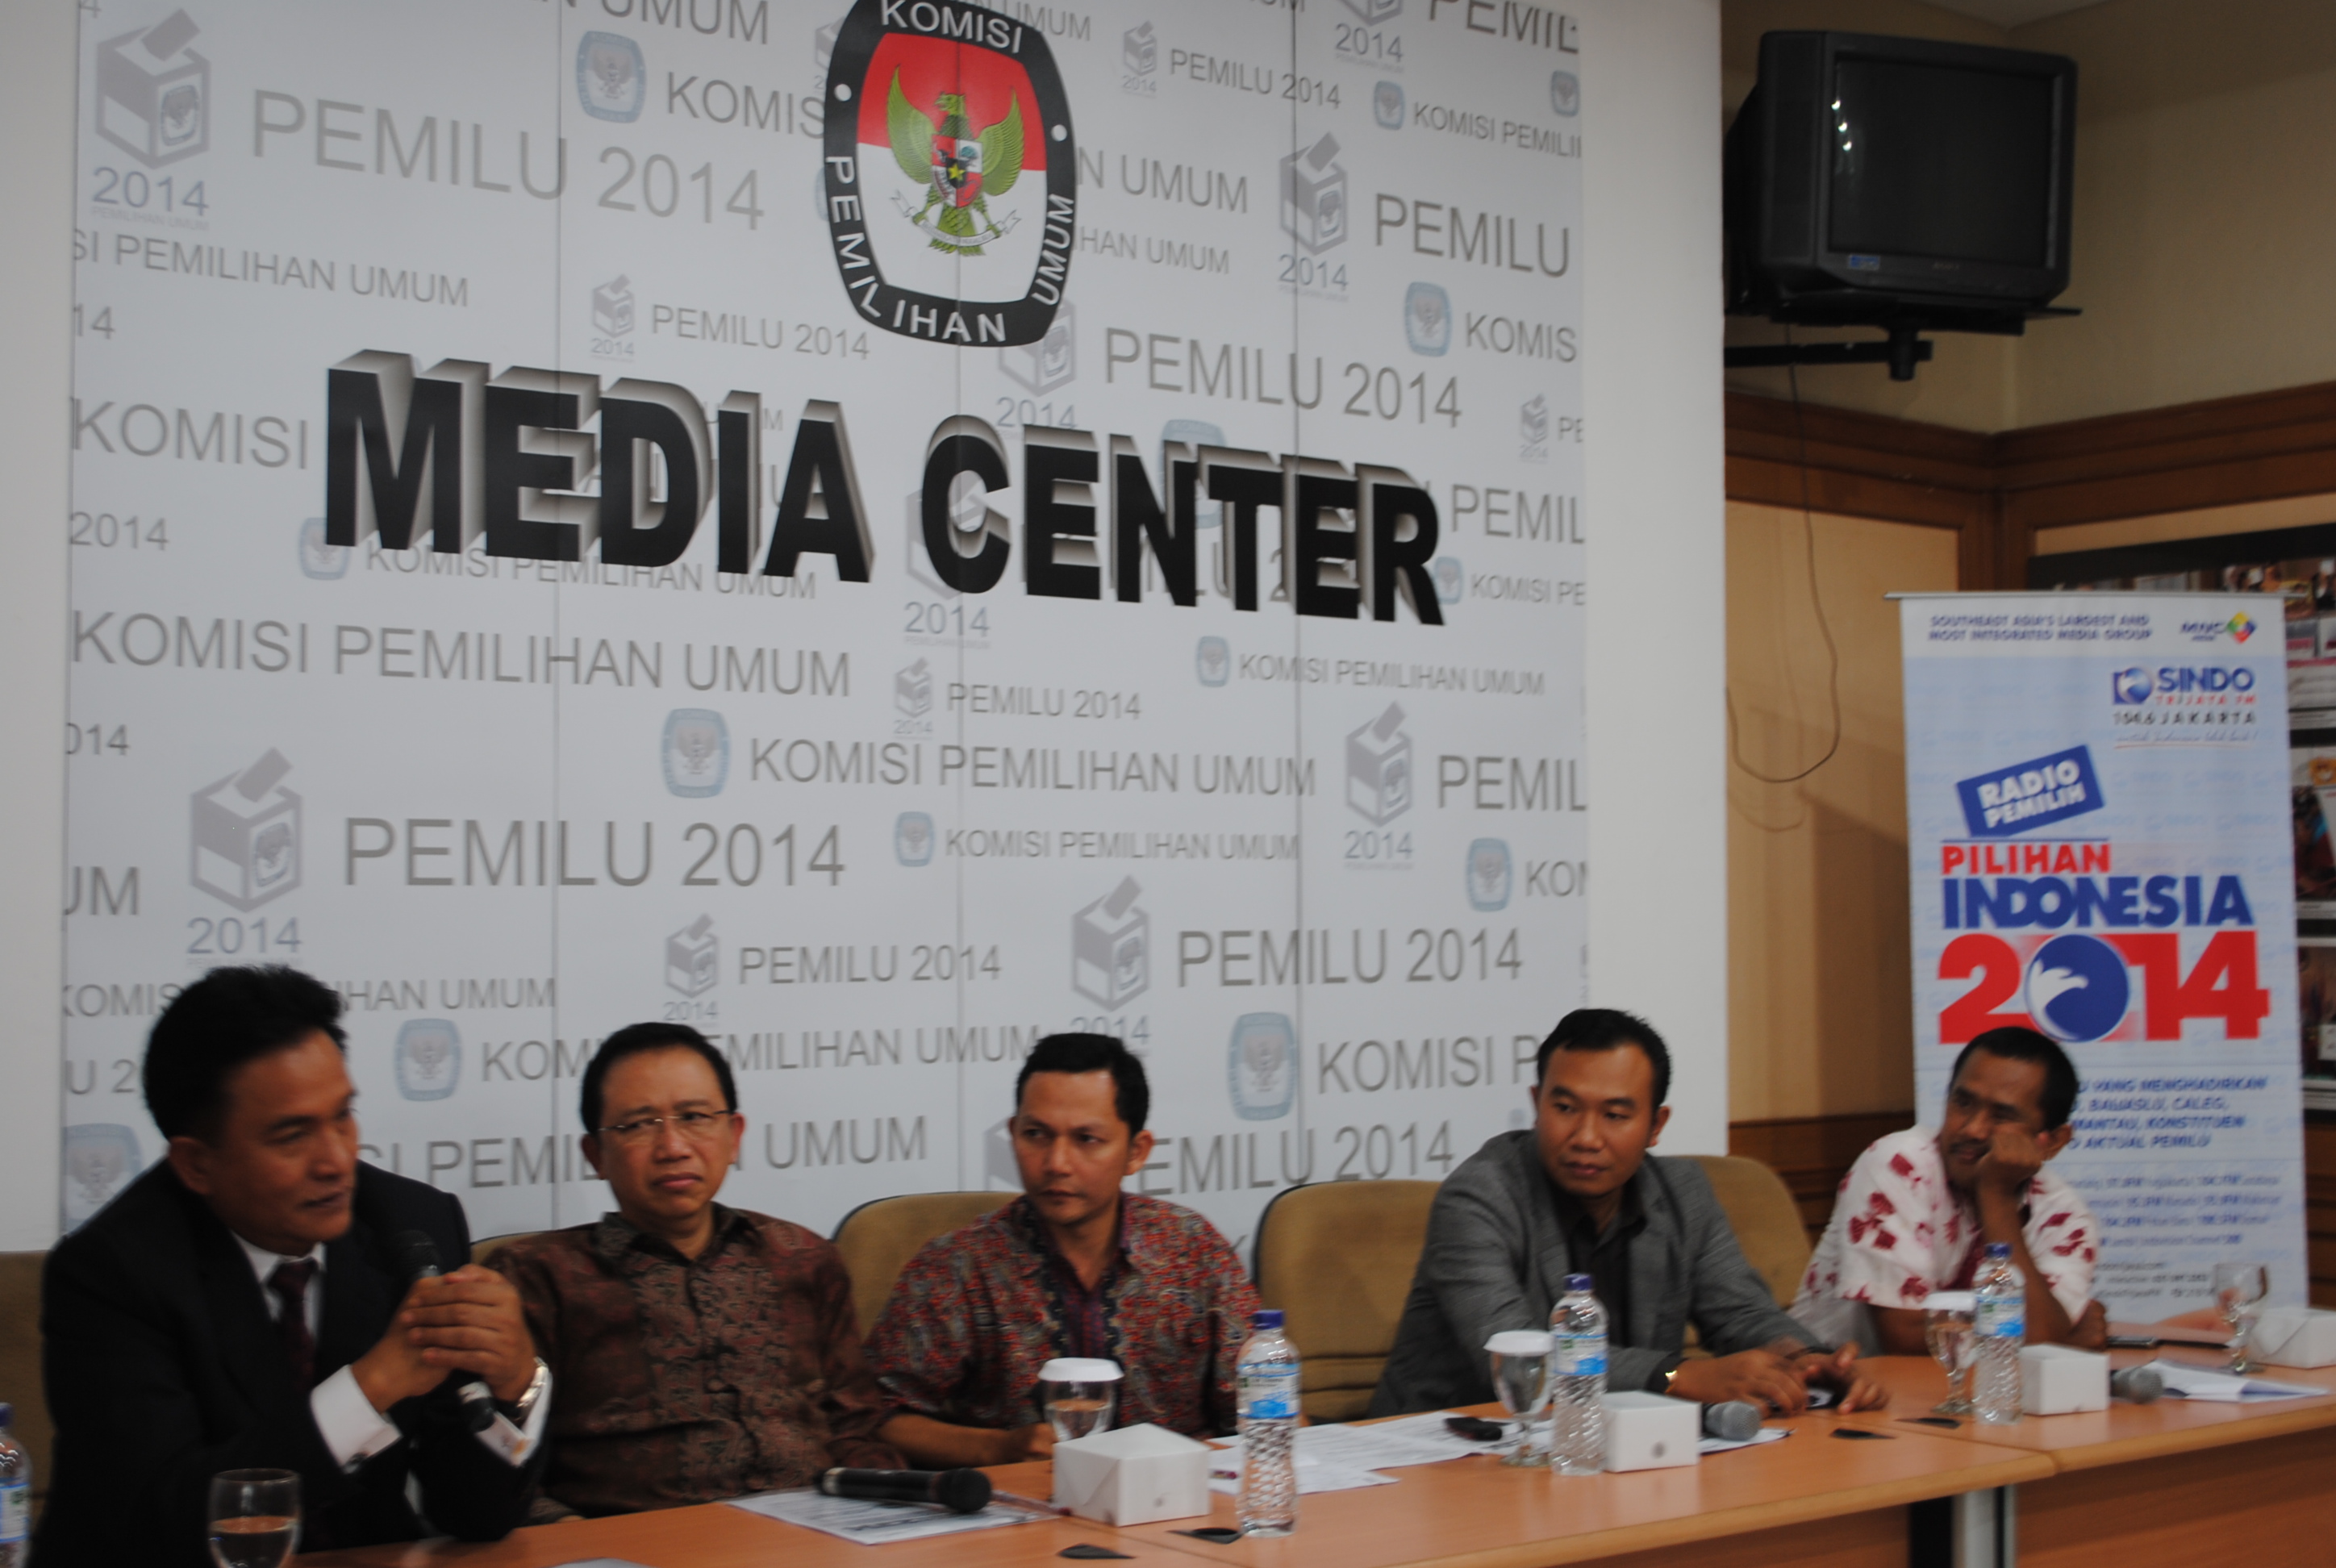 Launching Pilihan Indonesia 2014